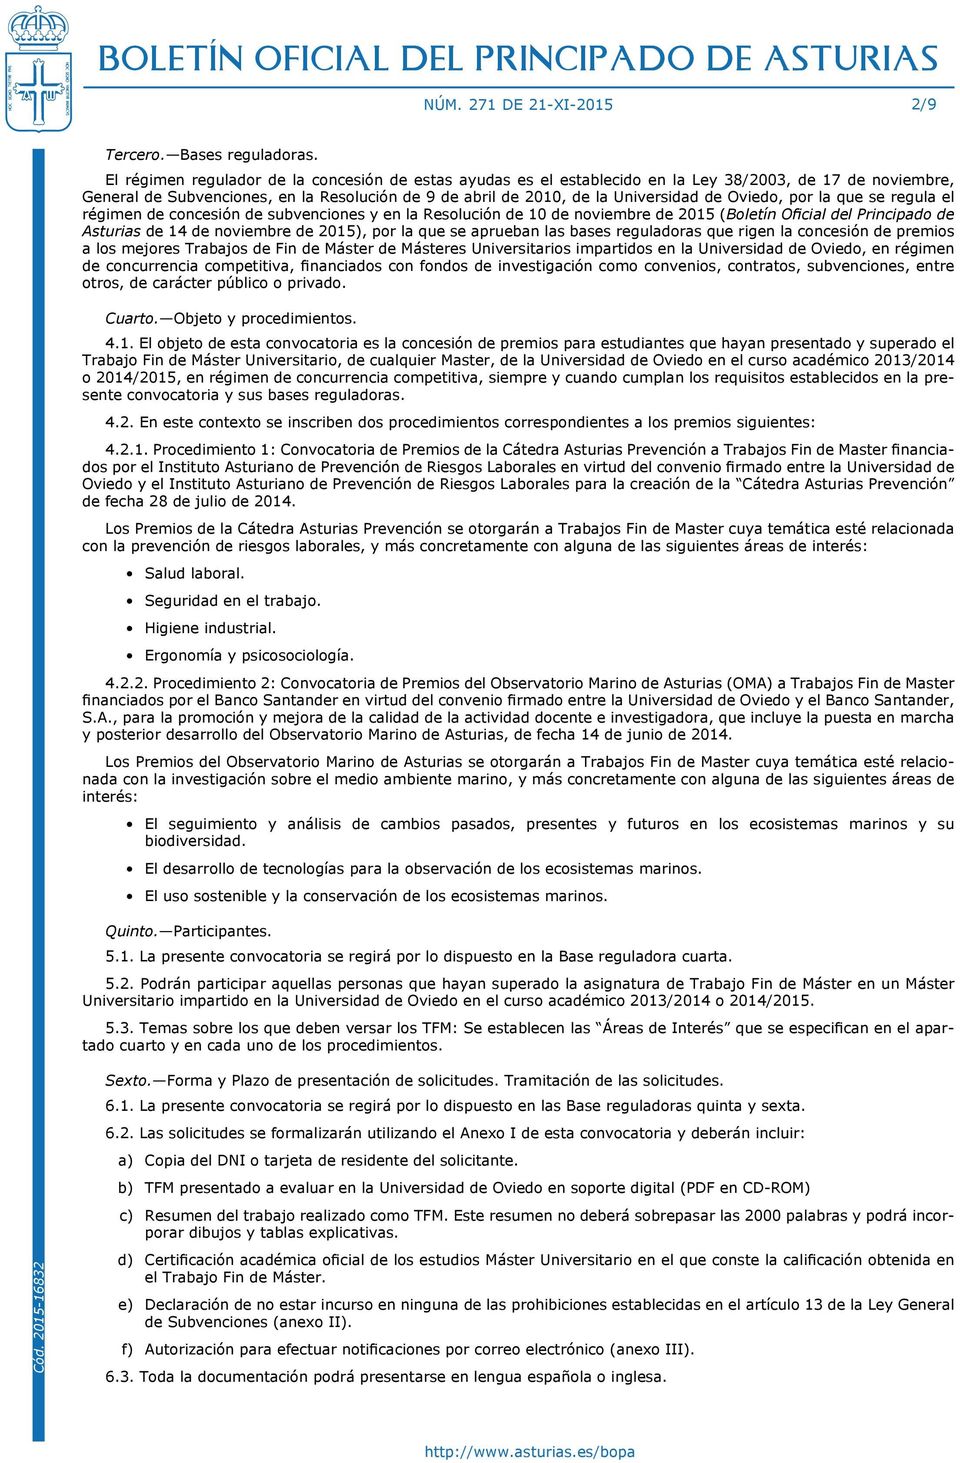 Oviedo, por la que se regula el régimen de concesión de subvenciones y en la Resolución de 10 de noviembre de 2015 (Boletín Oficial del Principado de Asturias de 14 de noviembre de 2015), por la que